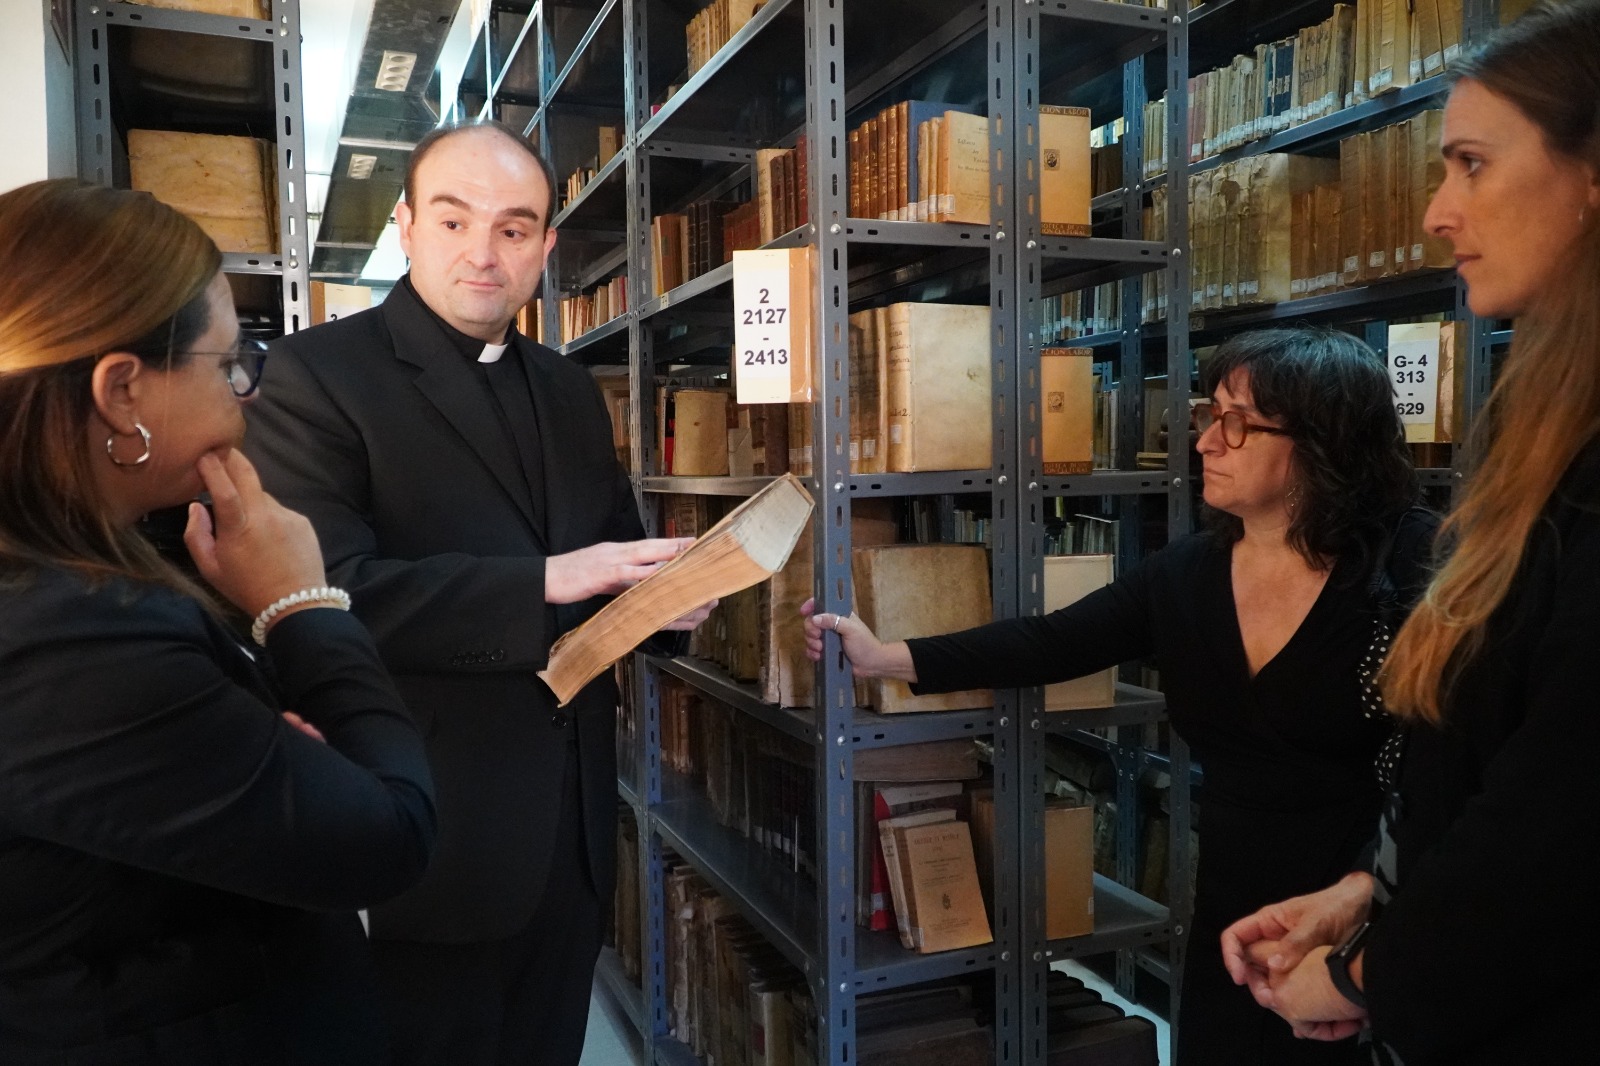 La digitalització de la Biblioteca Diocesana comença per les obres més consultades i per les més antigues